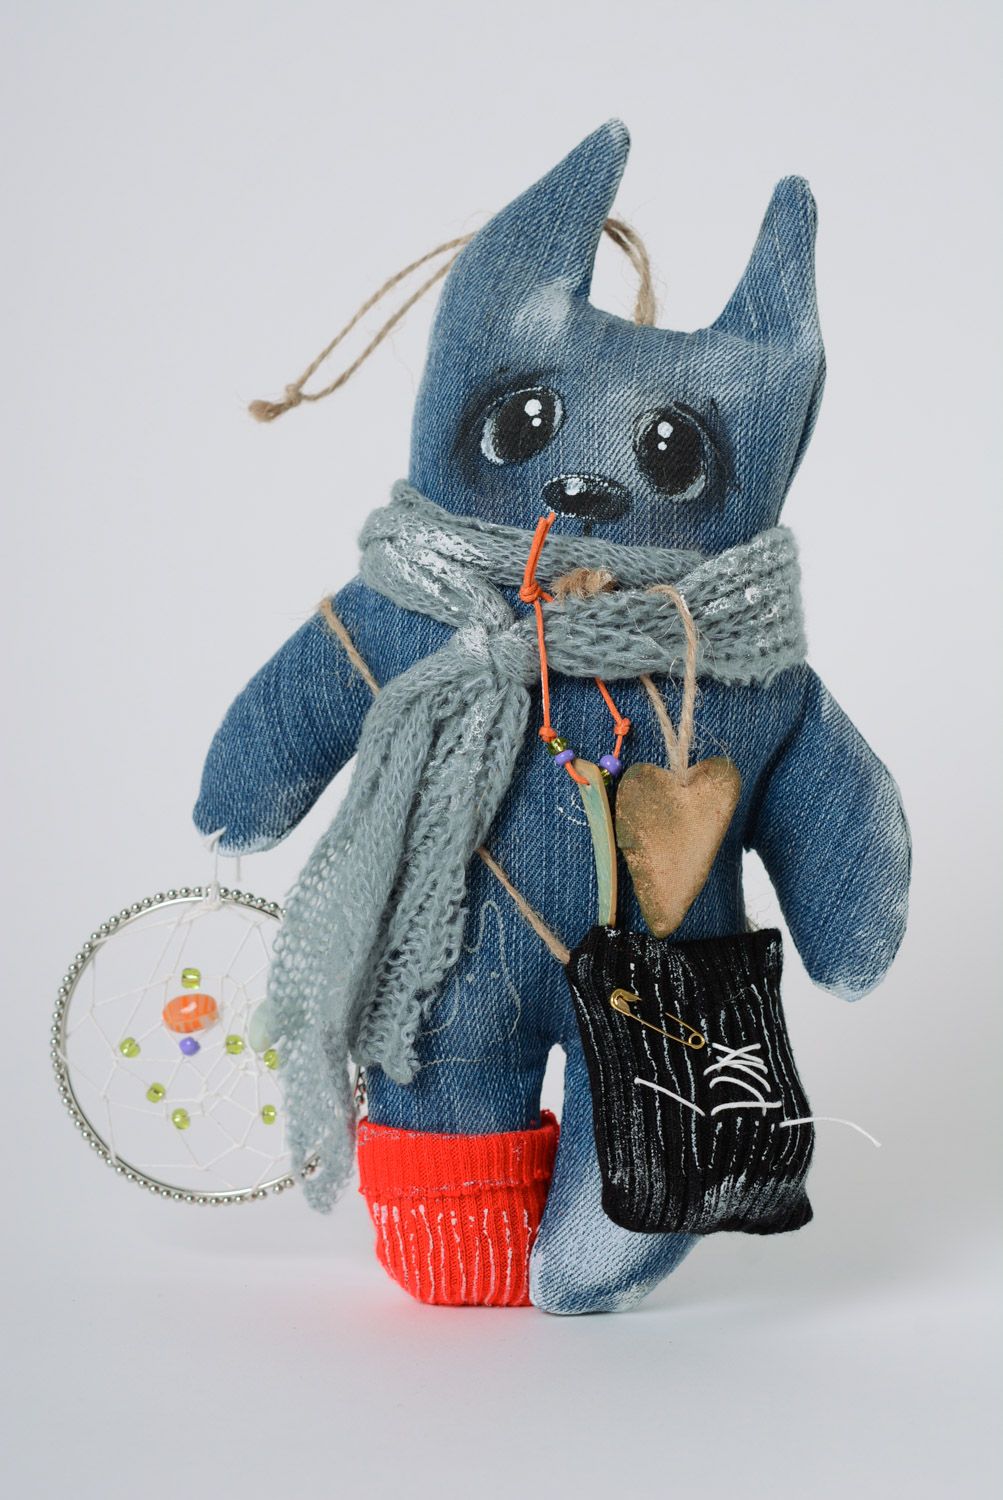 Синяя текстильная авторская игрушка в виде кота из джинса ручной работы мягкая  фото 1